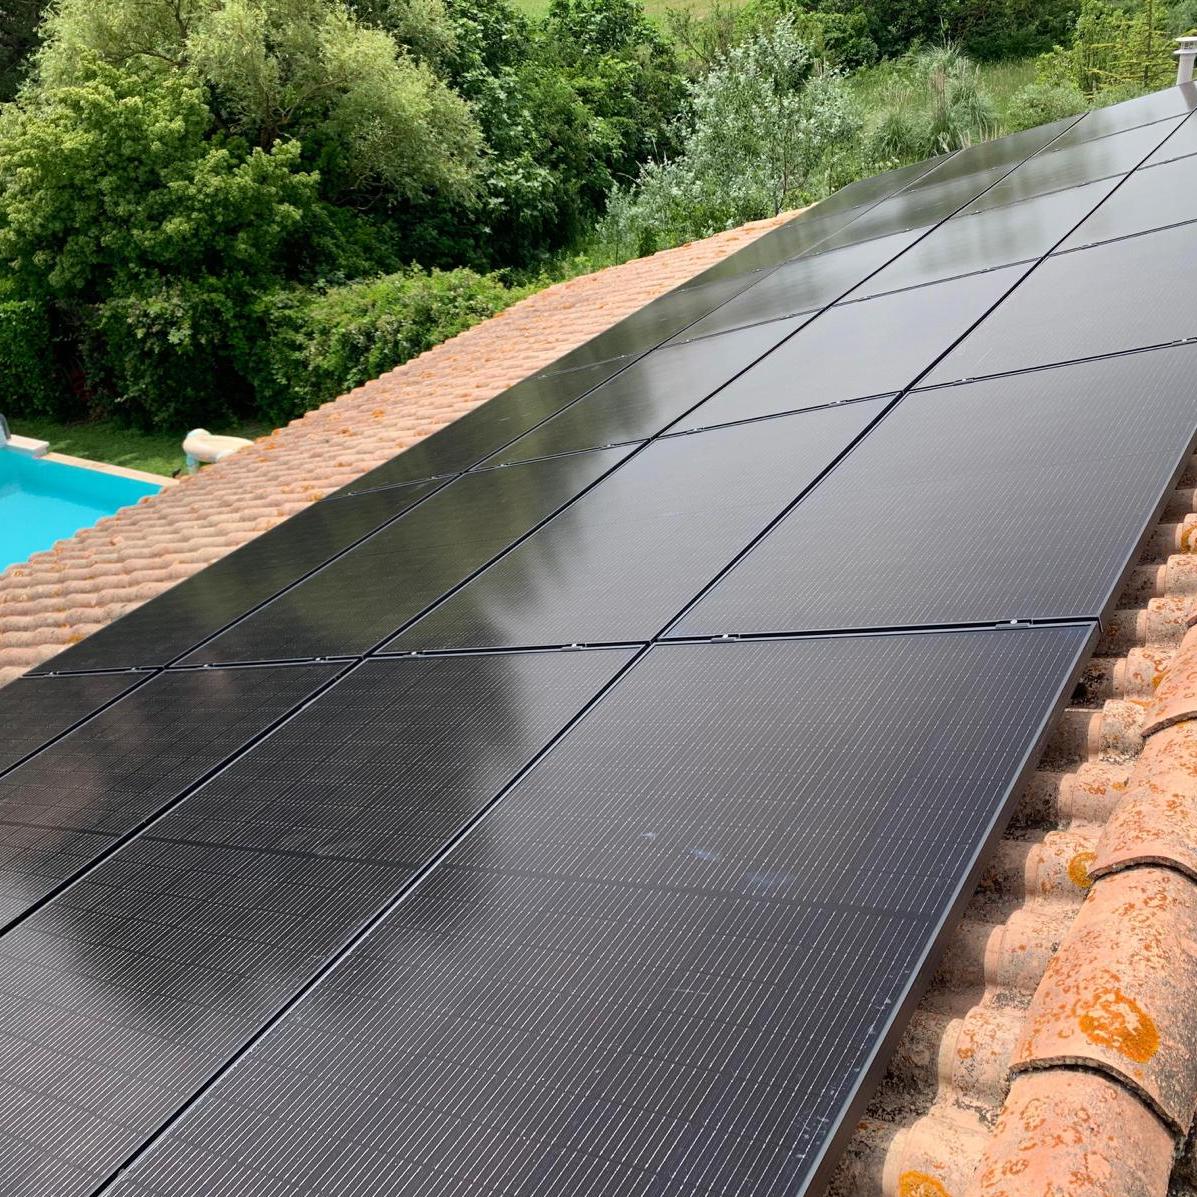 Panneaux solaires posés sur un toit de maison pour réaliser des économies d'énergie